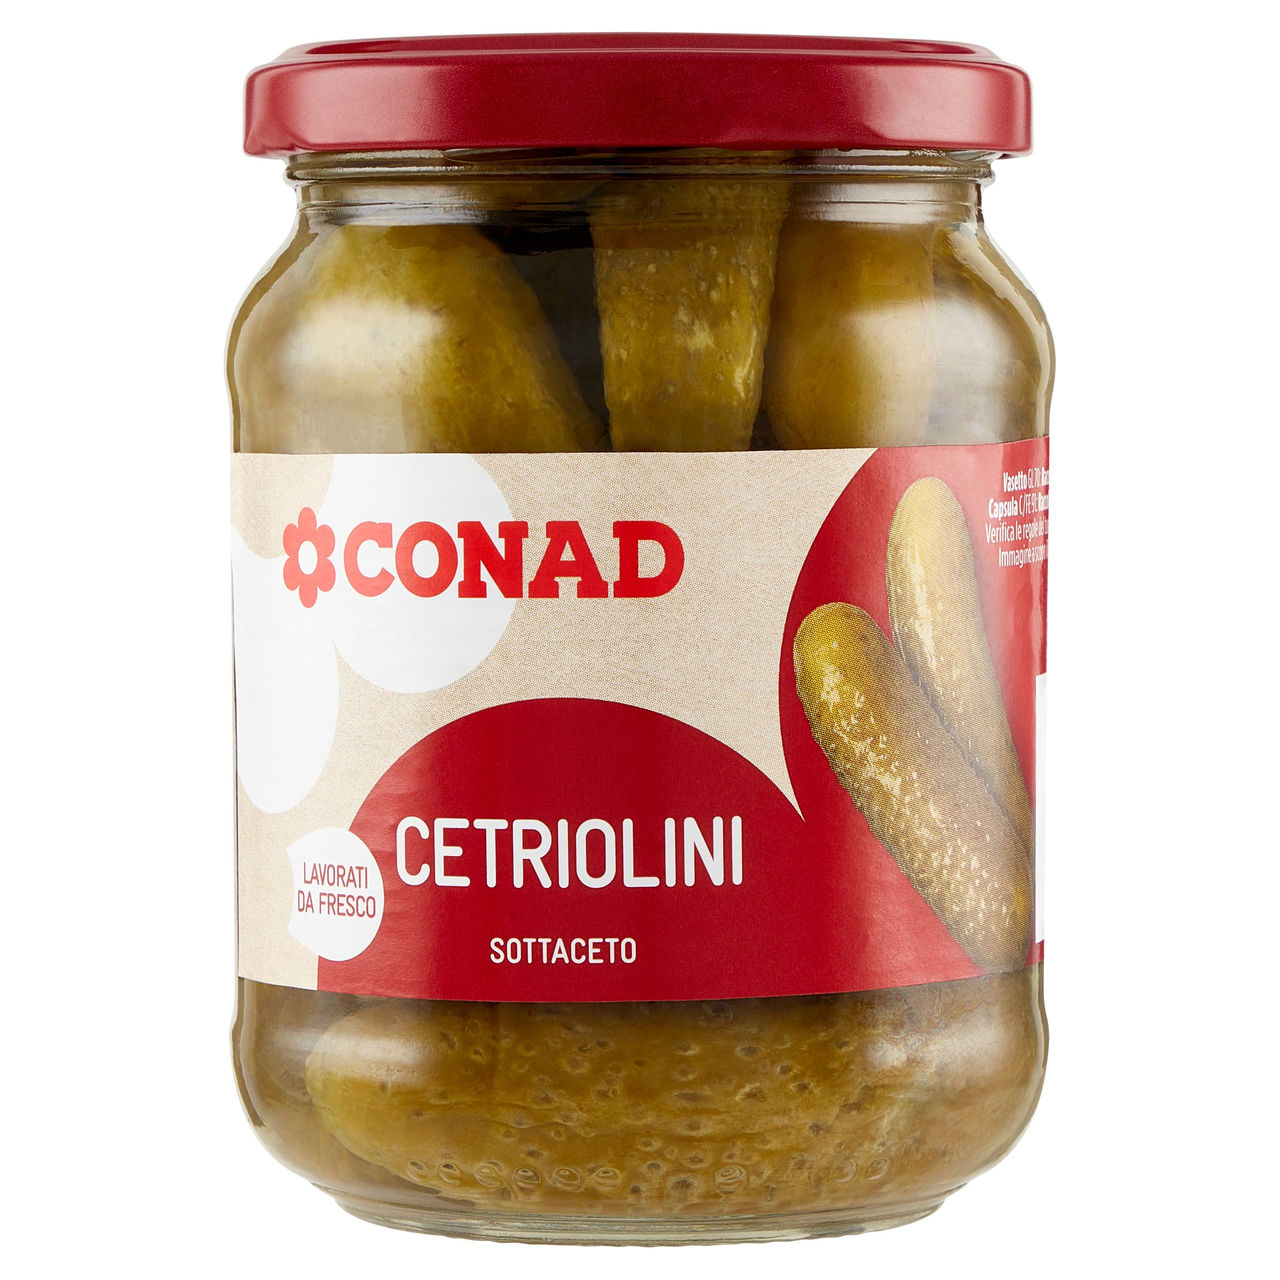 Cetriolini Sottaceto 300 g Conad in vendita online